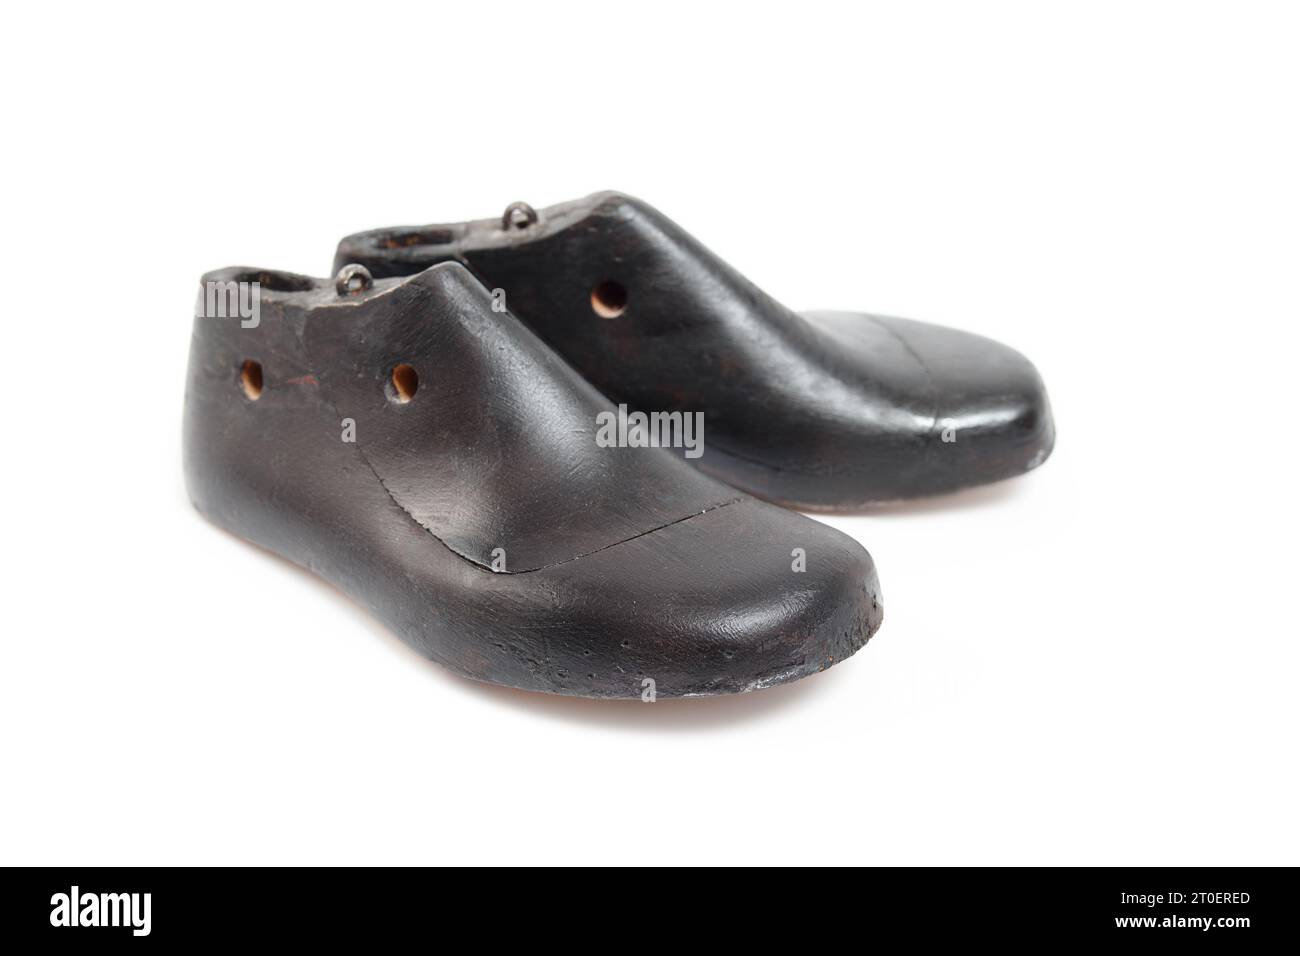 Isolierter Vintage-Schuh in Kindergröße. Paar dunkle Holzschuhformen für Kinder. Wird von Schuhmachern oder Kabelhändlern für die Herstellung oder Produktion verwendet Stockfoto